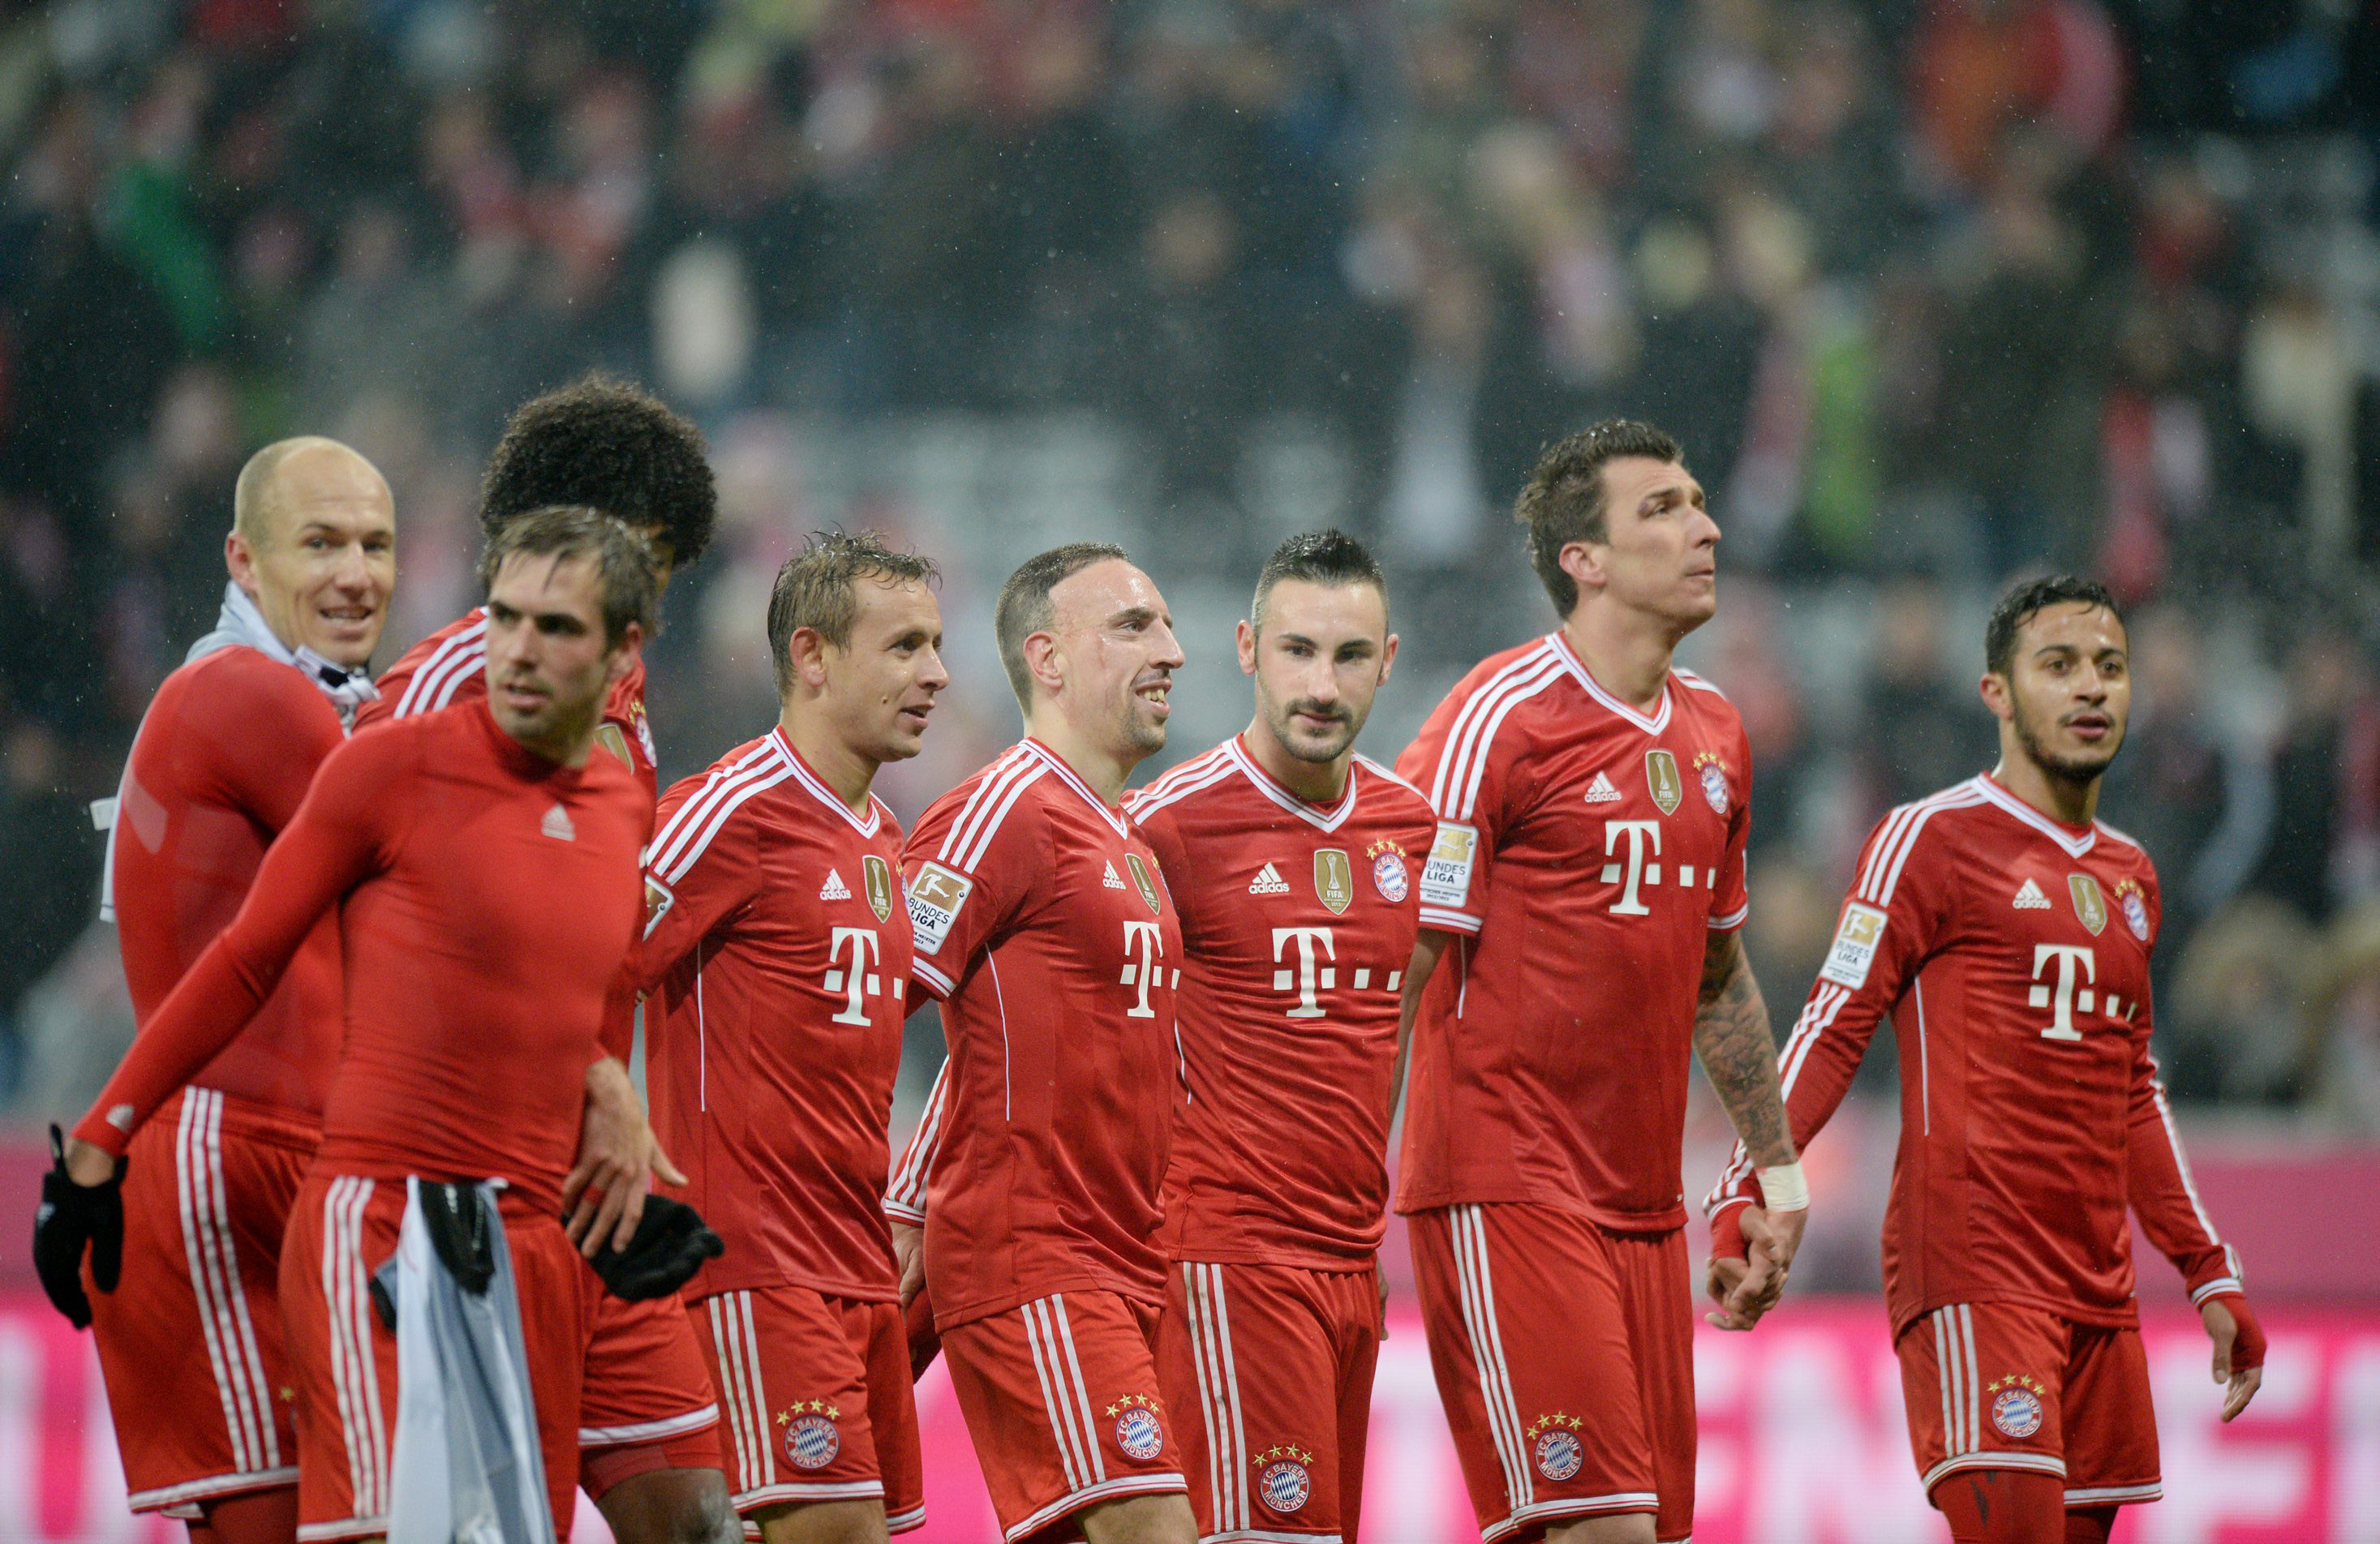 Avtalet skrevs mellan Adidas och en Bayern München-spelare 2008.